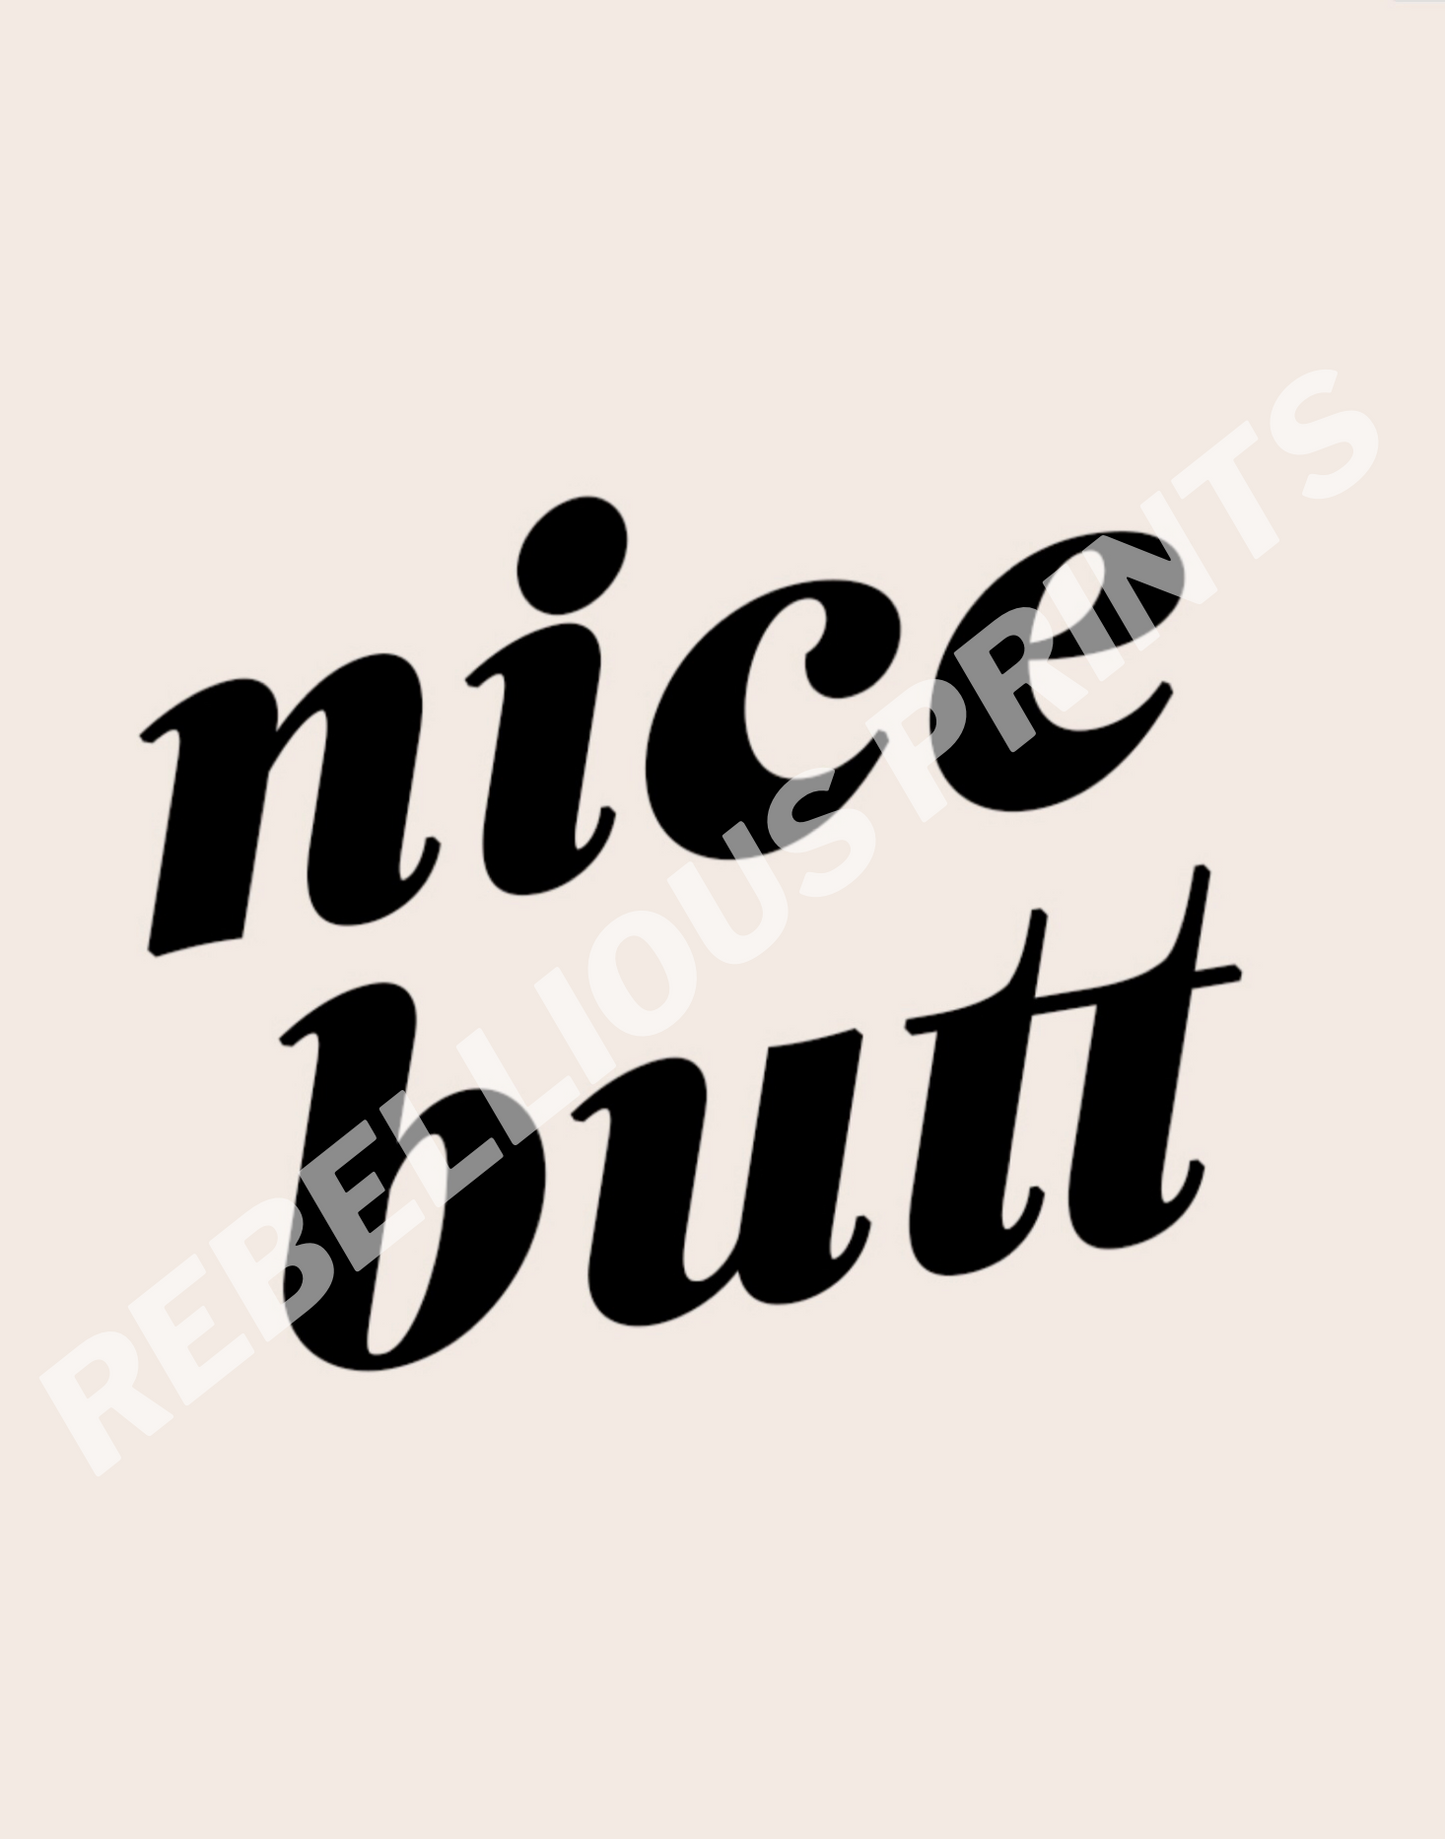 Nice Butt